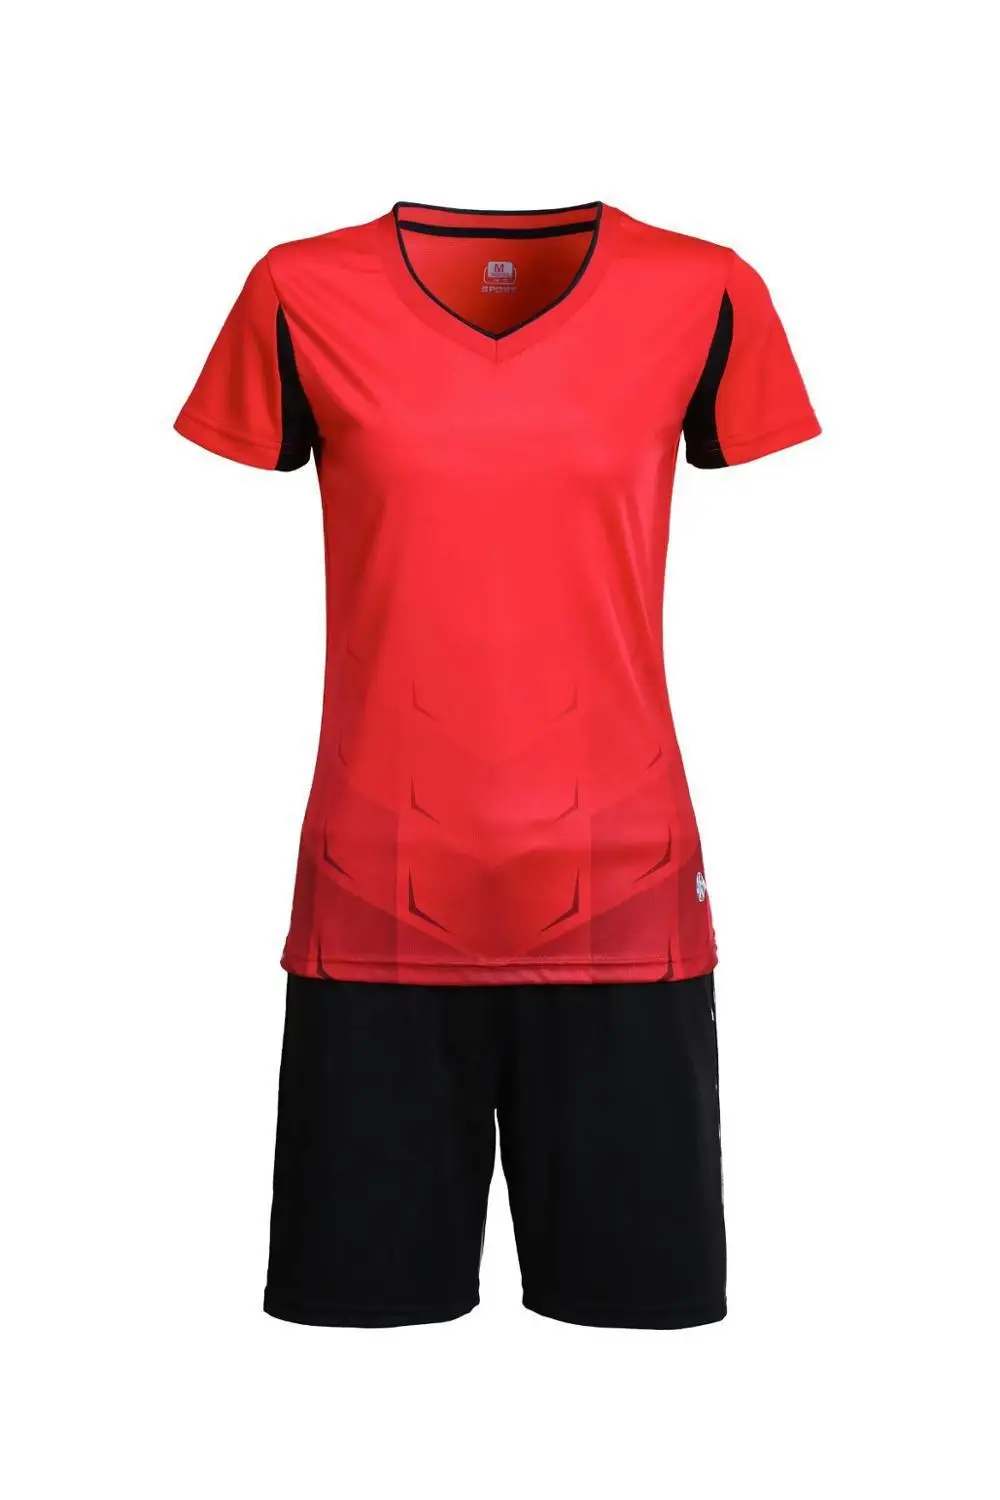 Г. женские тренажерный зал, Настольный теннис рубашки+ Шорты комплекты с коротким рукавом Футбол Джерси леди Футбол костюмы девушки Футбольная форма спортивной - Цвет: LB 1611